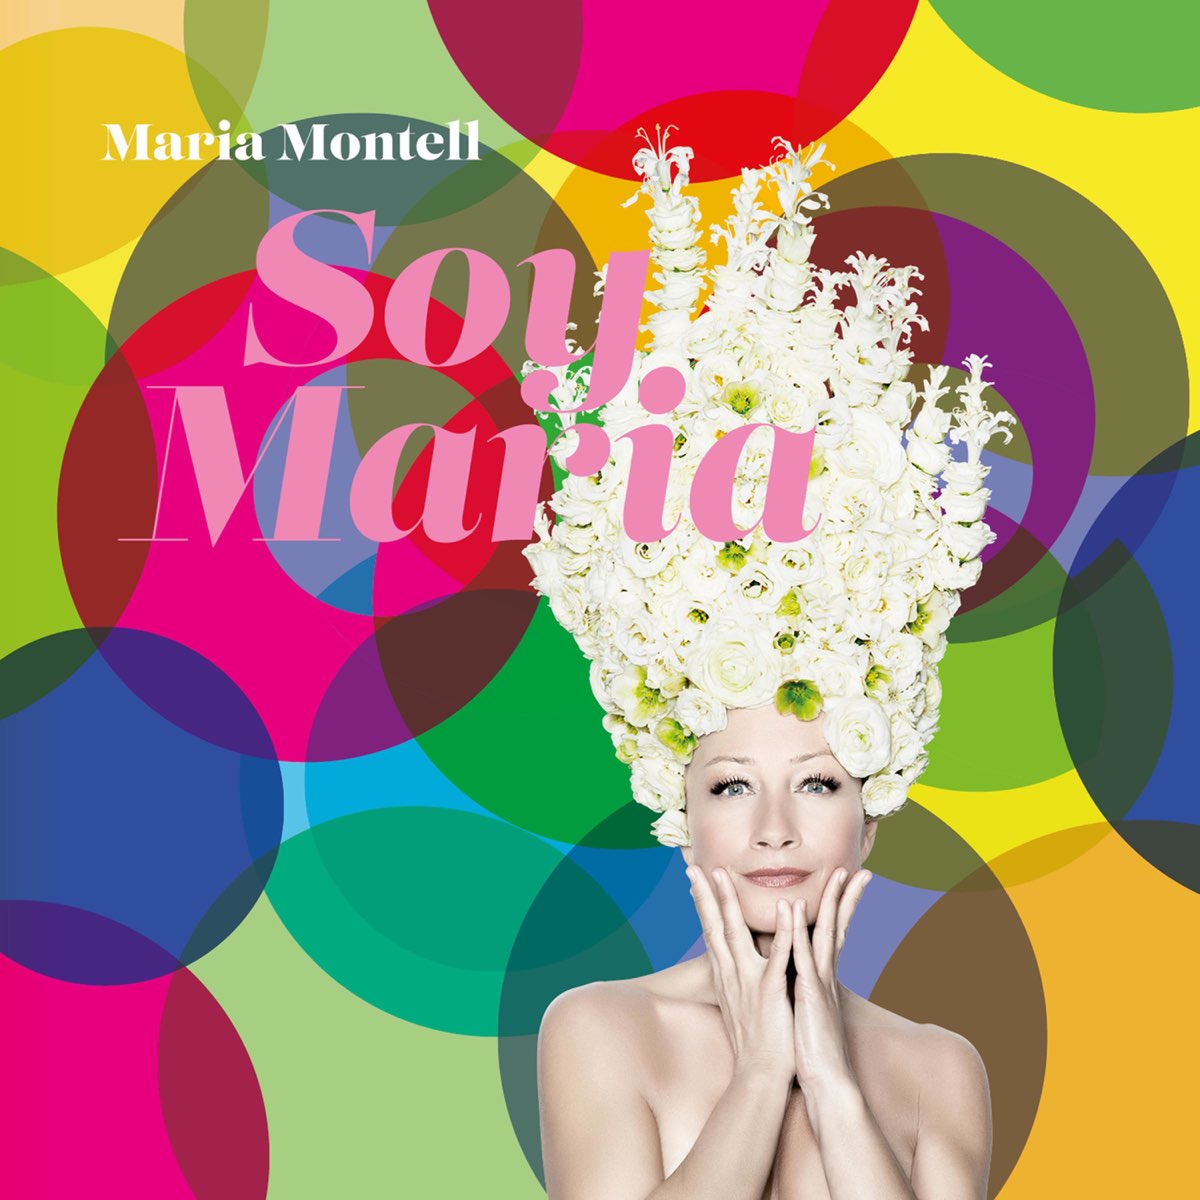 Maria Montell. Soy Maria. Maria Soya. Песня Maria Maria на испанском.